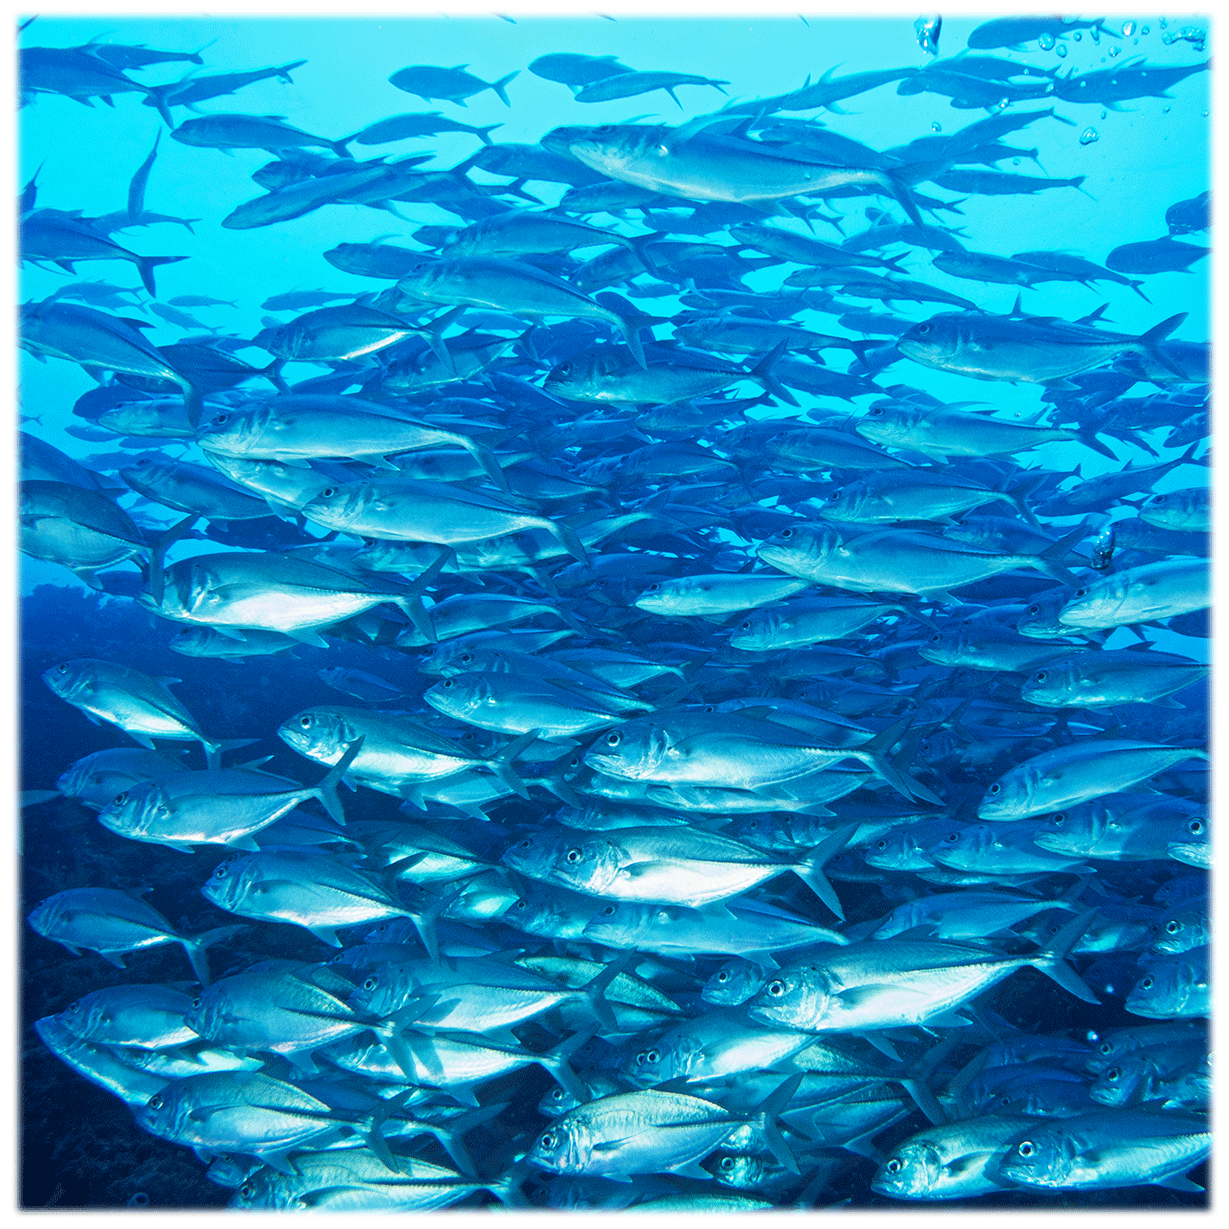 ボホール・バリカサグ島の海の中　ギンガメアジの群れ